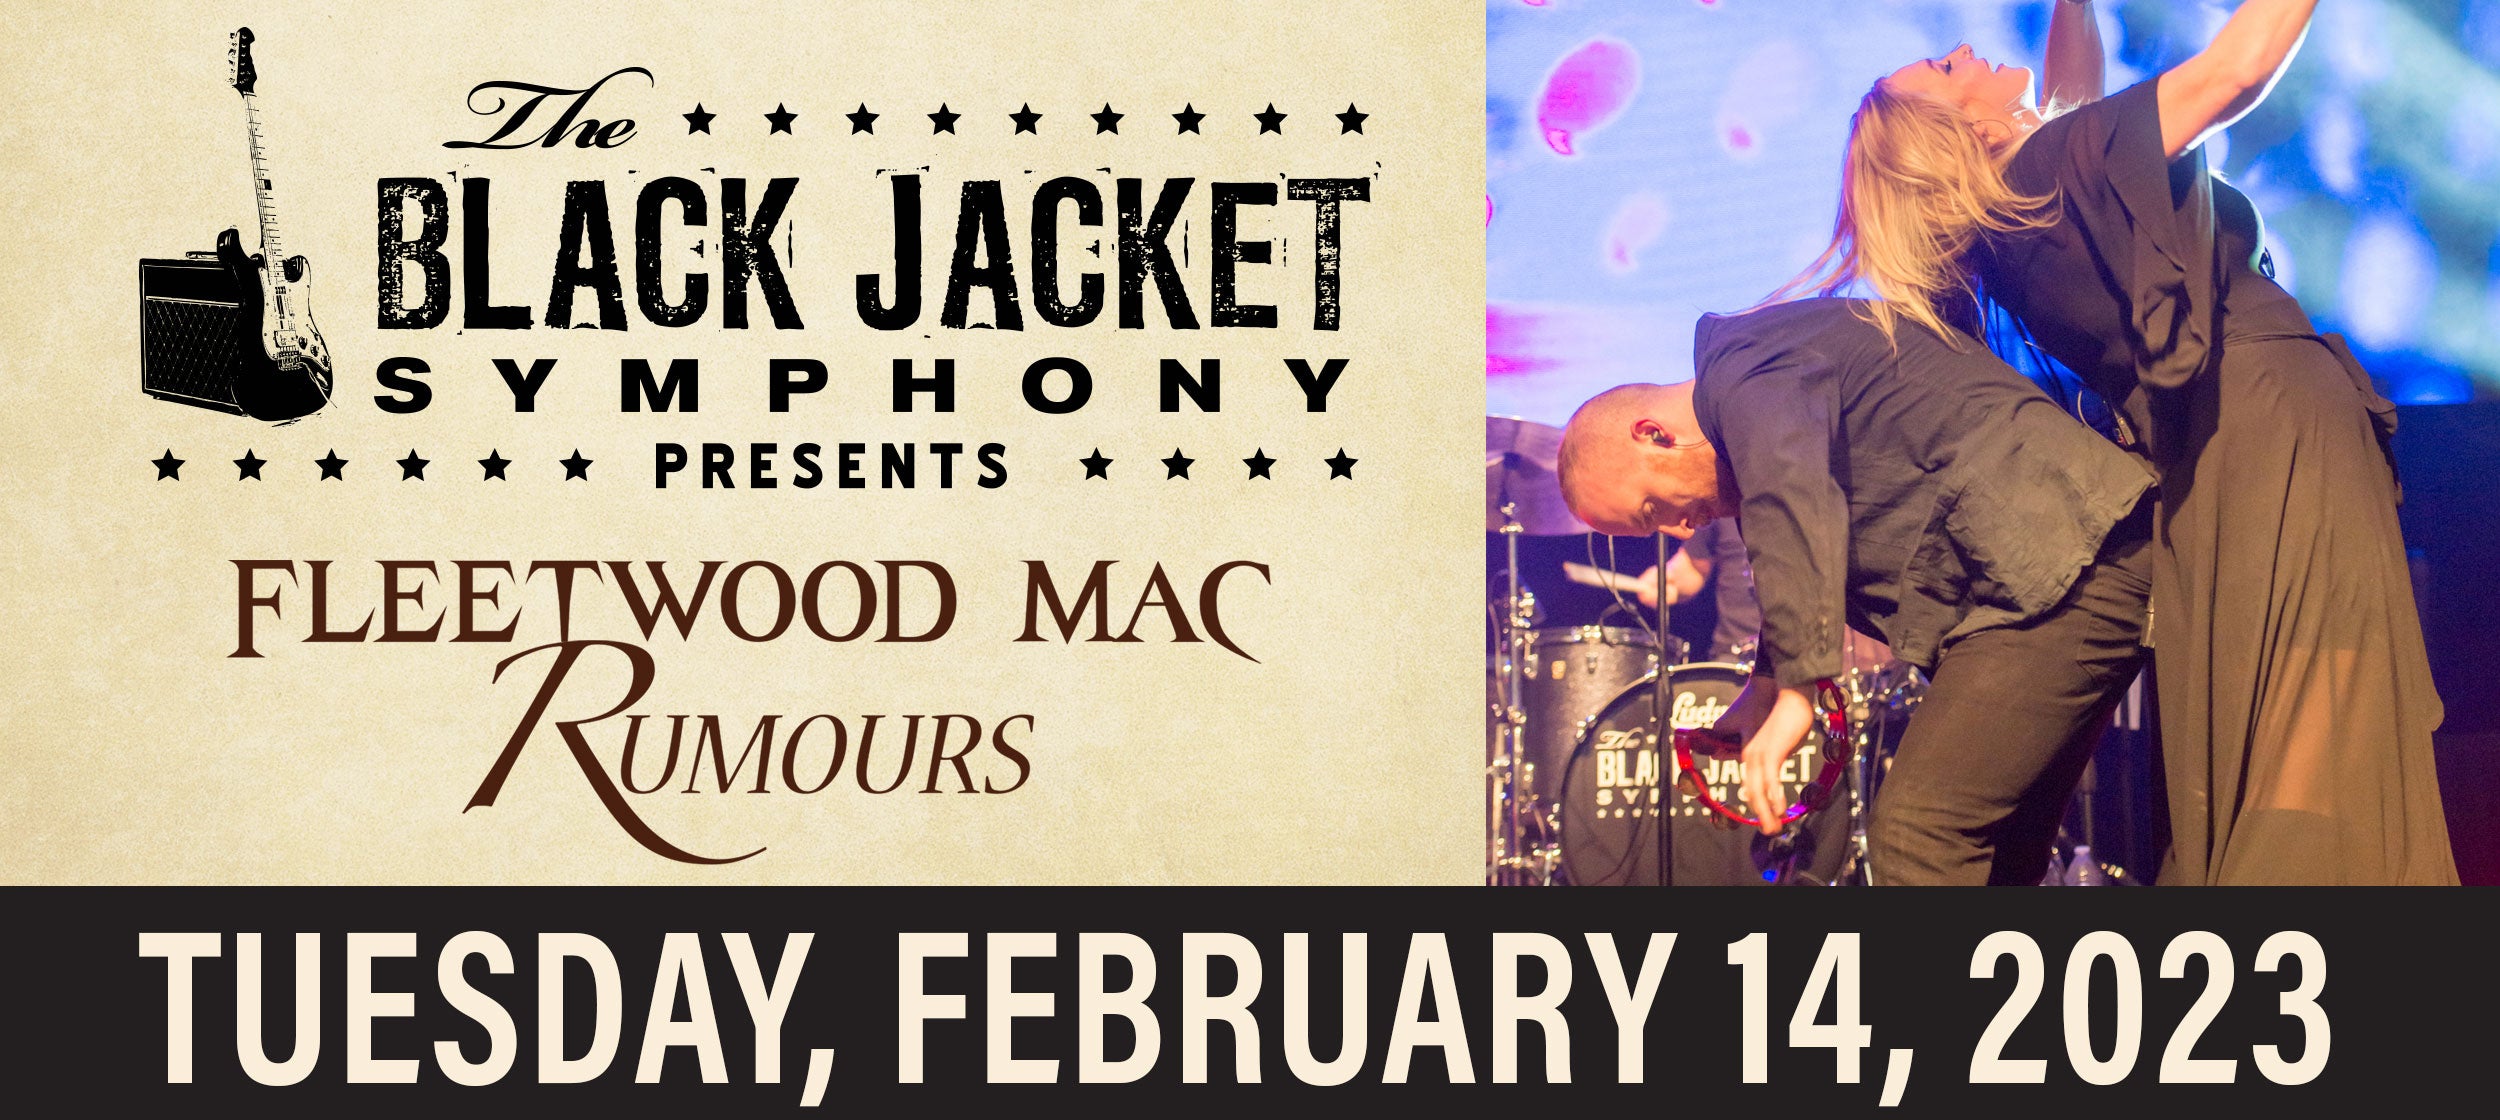 Black Jacket Symphony Presents Fleetwood Mac’s ‘Rumours’